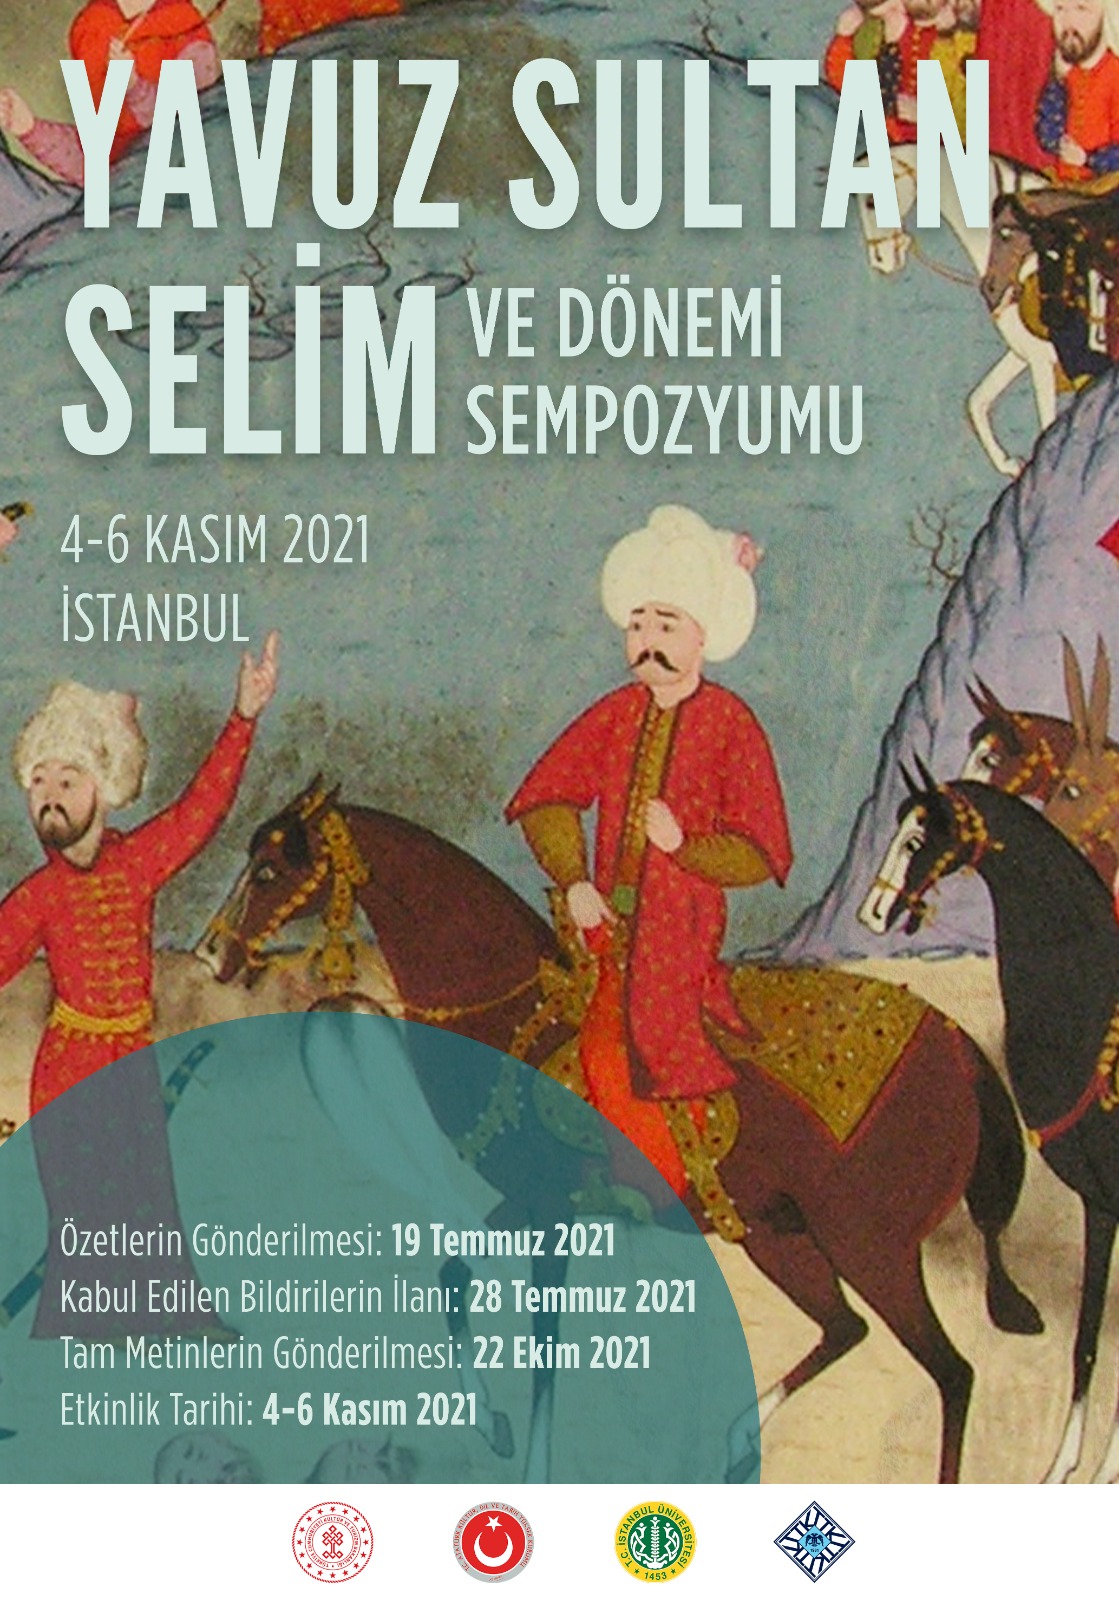 Uluslararası Yavuz Sultan Selim ve Dönemi Sempozyumu